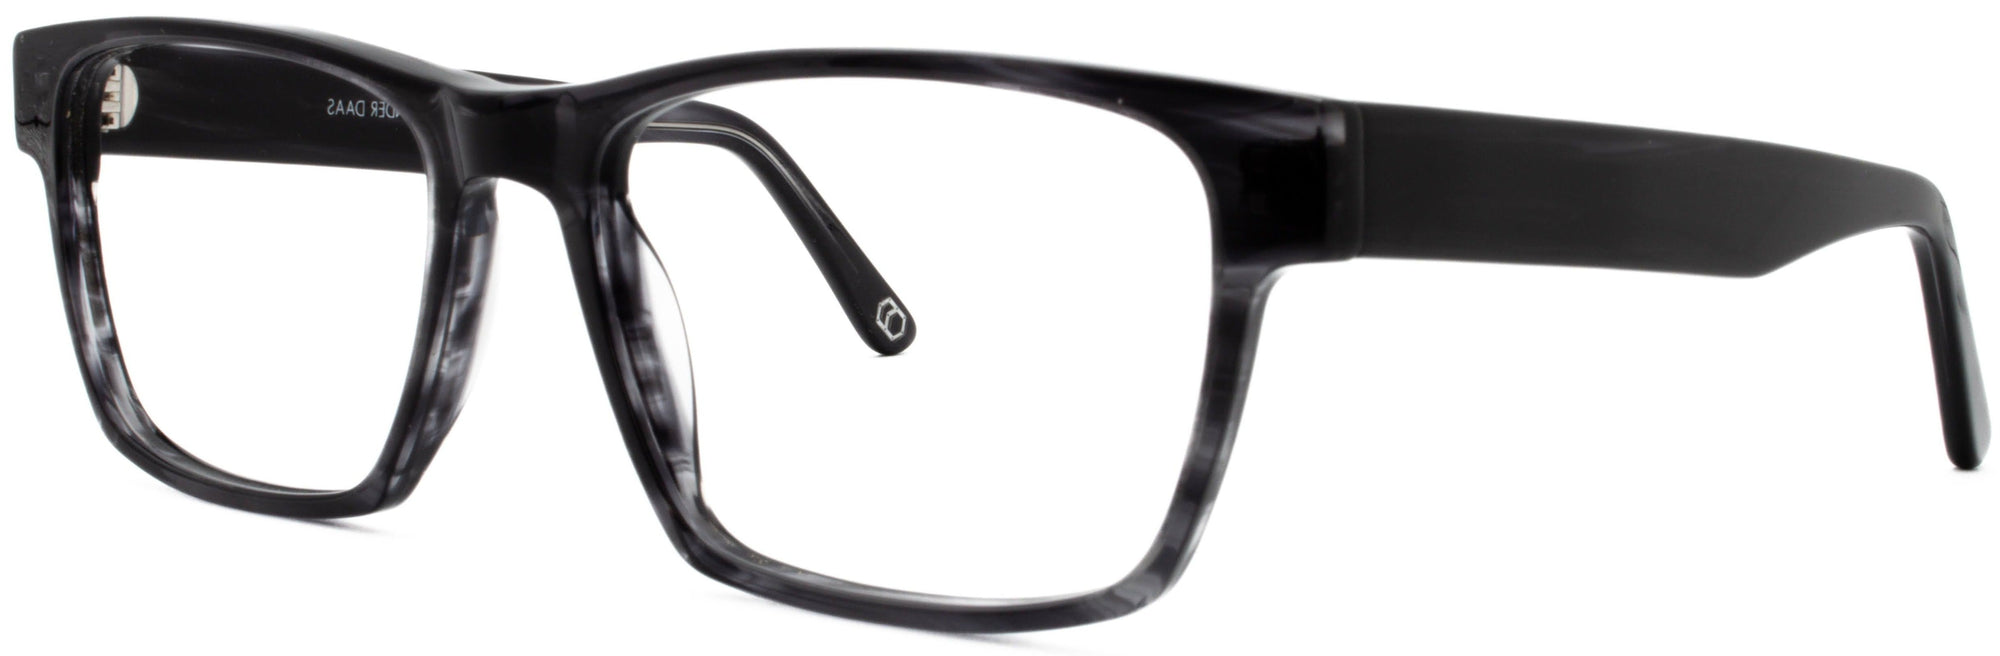 Alexander Daas - Remy Eyeglasses - Black Striate - Side View